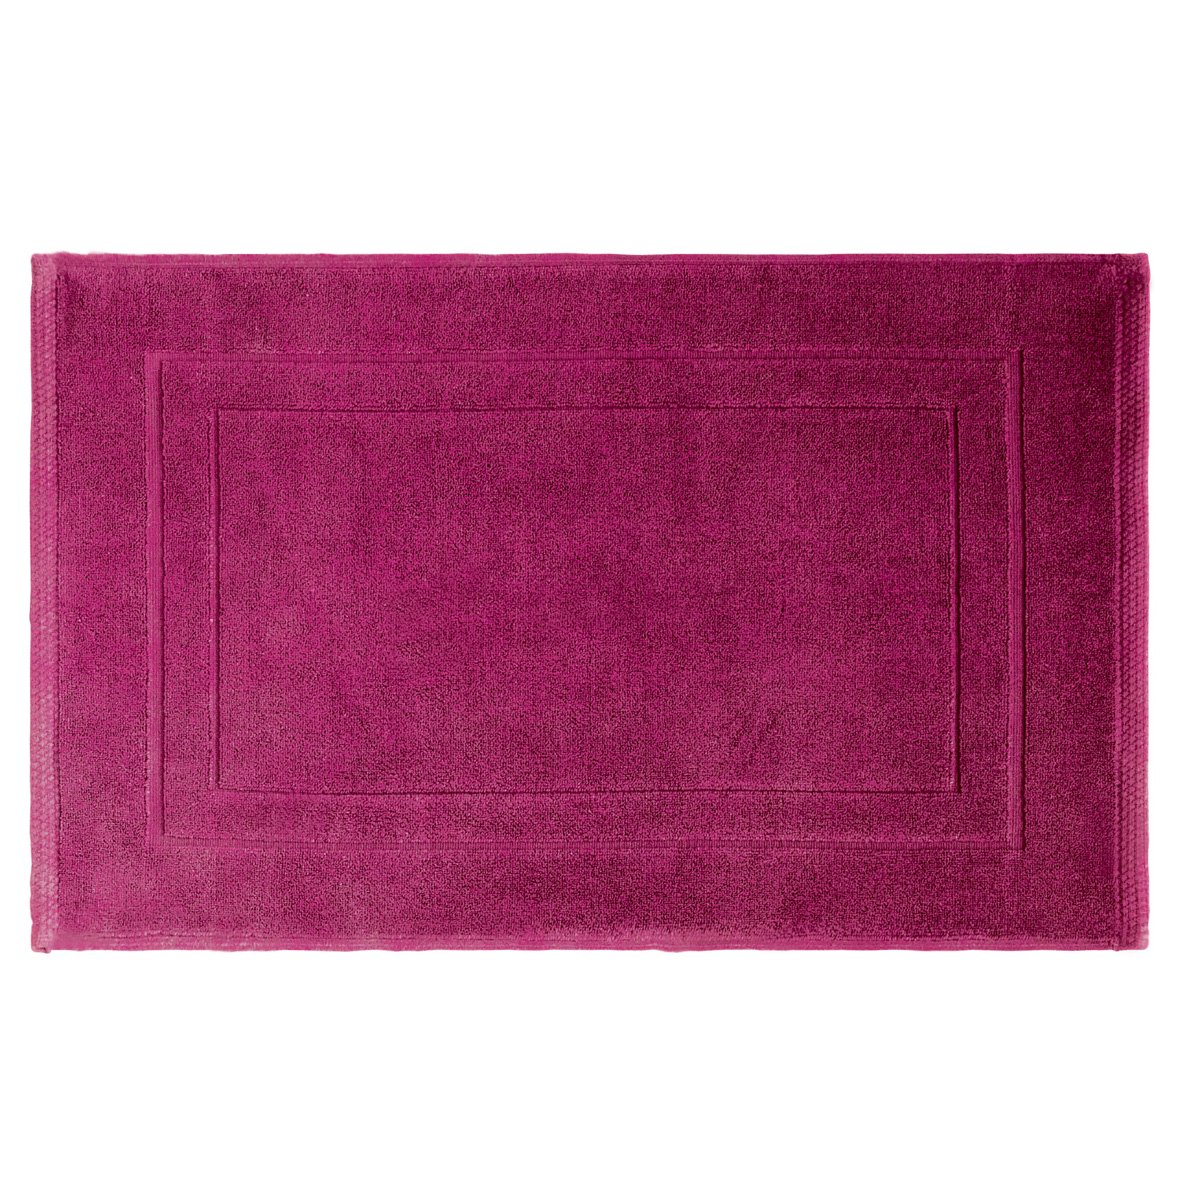 ガルニエティエボー バスマット エレア フクシア(赤紫)